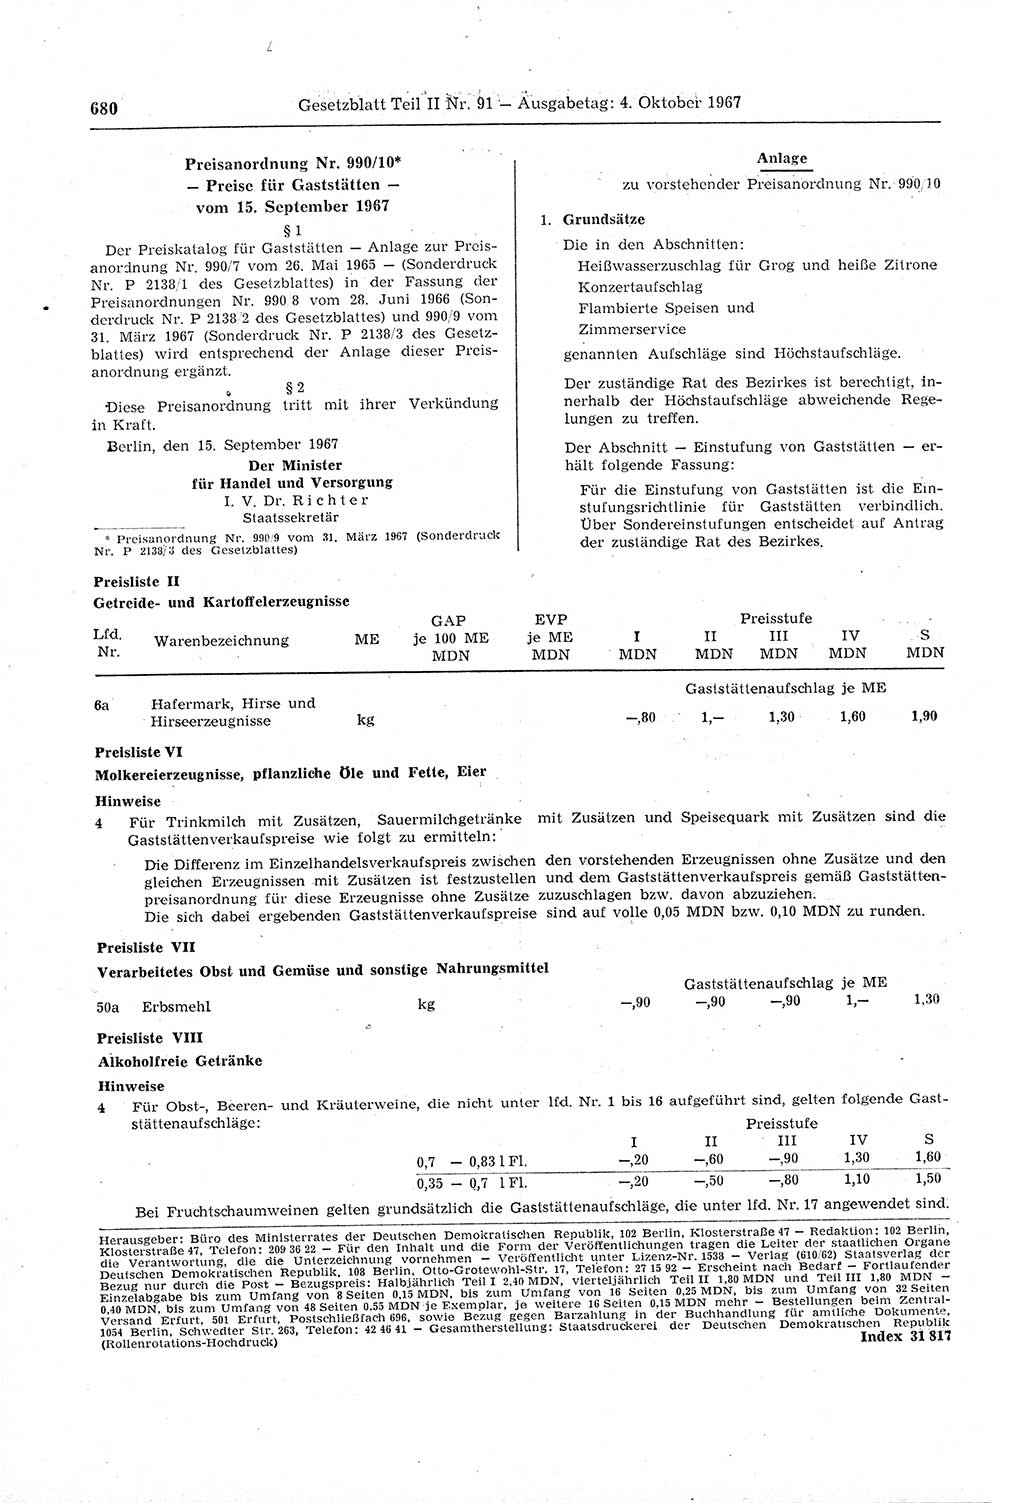 Gesetzblatt (GBl.) der Deutschen Demokratischen Republik (DDR) Teil ⅠⅠ 1967, Seite 680 (GBl. DDR ⅠⅠ 1967, S. 680)